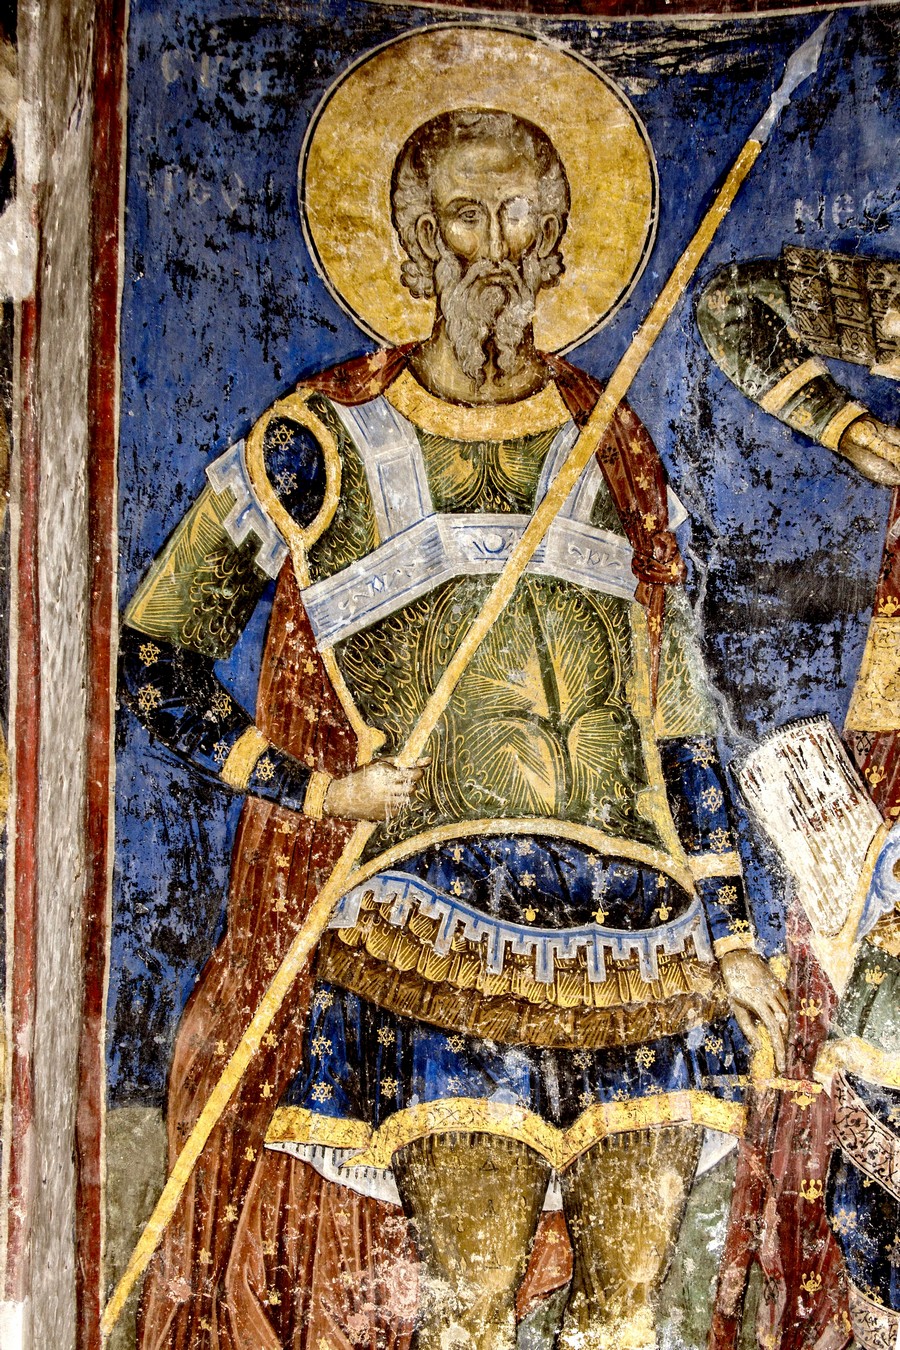 Святой Мученик Арефа Негранский. Фреска церкви Святой Троицы в монастыре Манасия (Ресава), Сербия. До 1418 года.